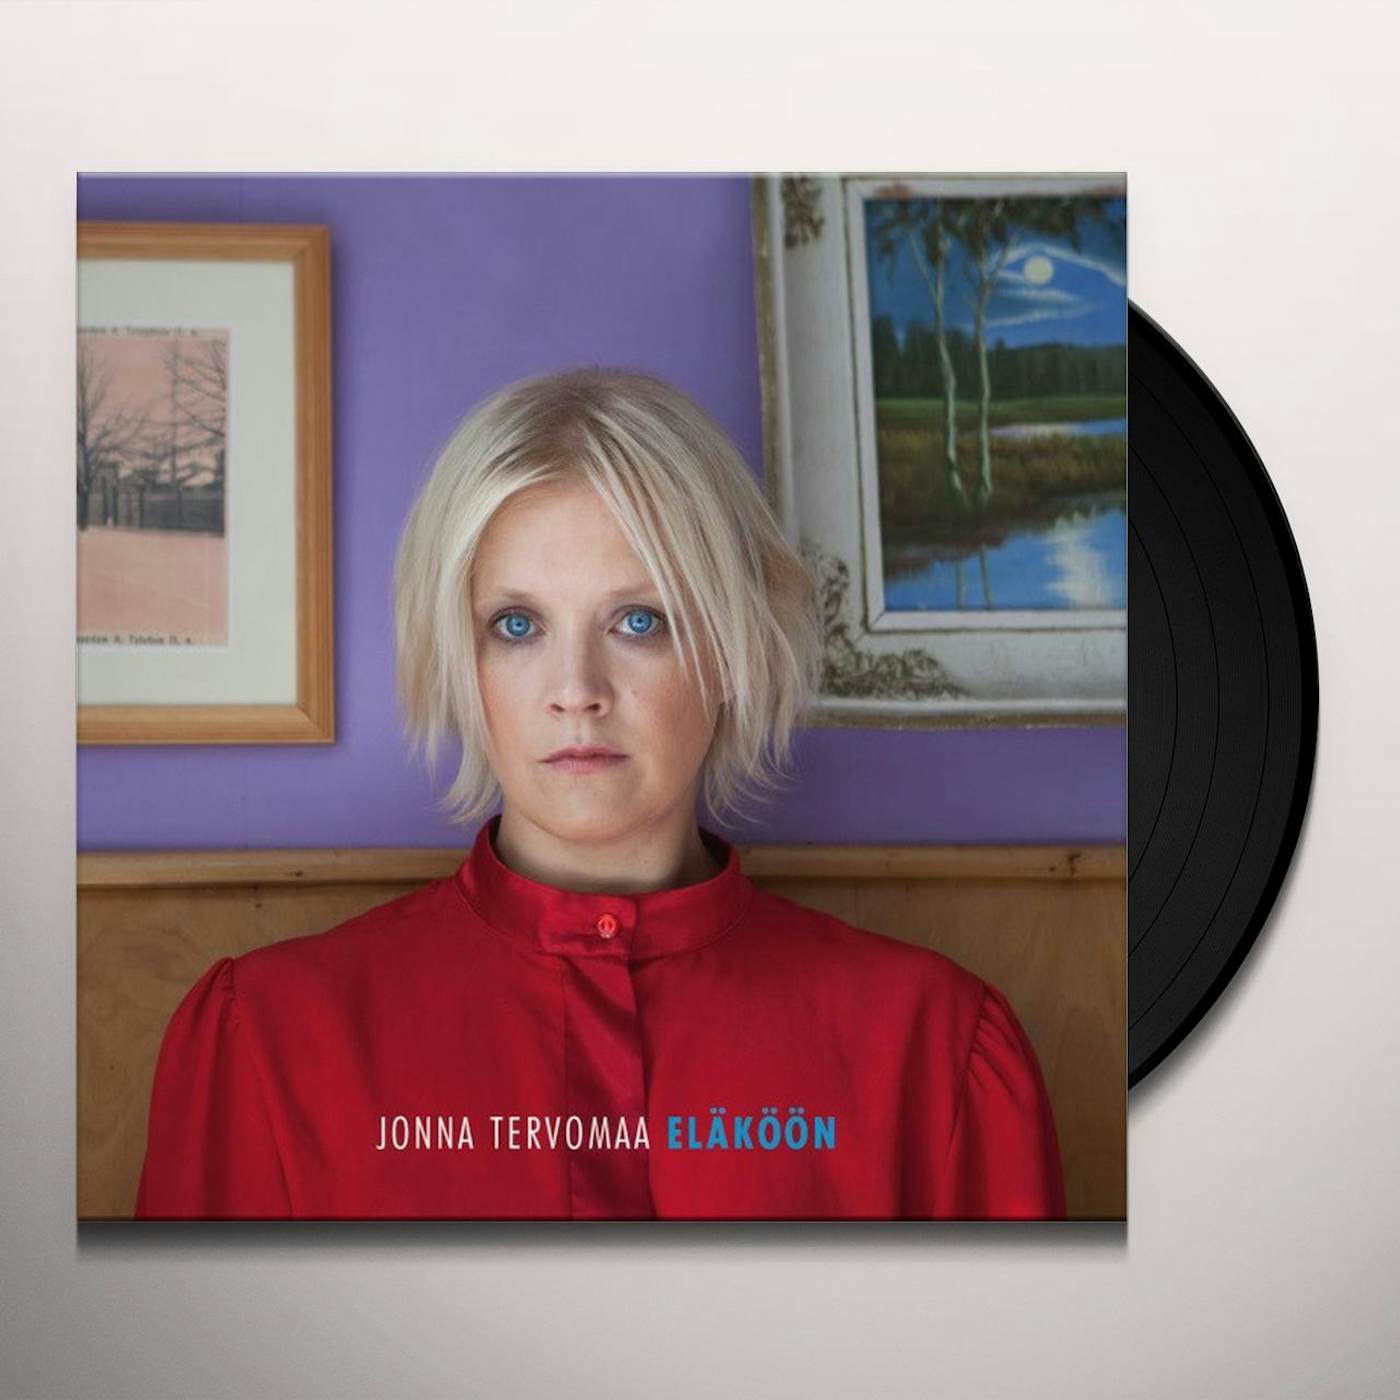 Jonna Tervomaa ELAKOON Vinyl Record - Holland Release